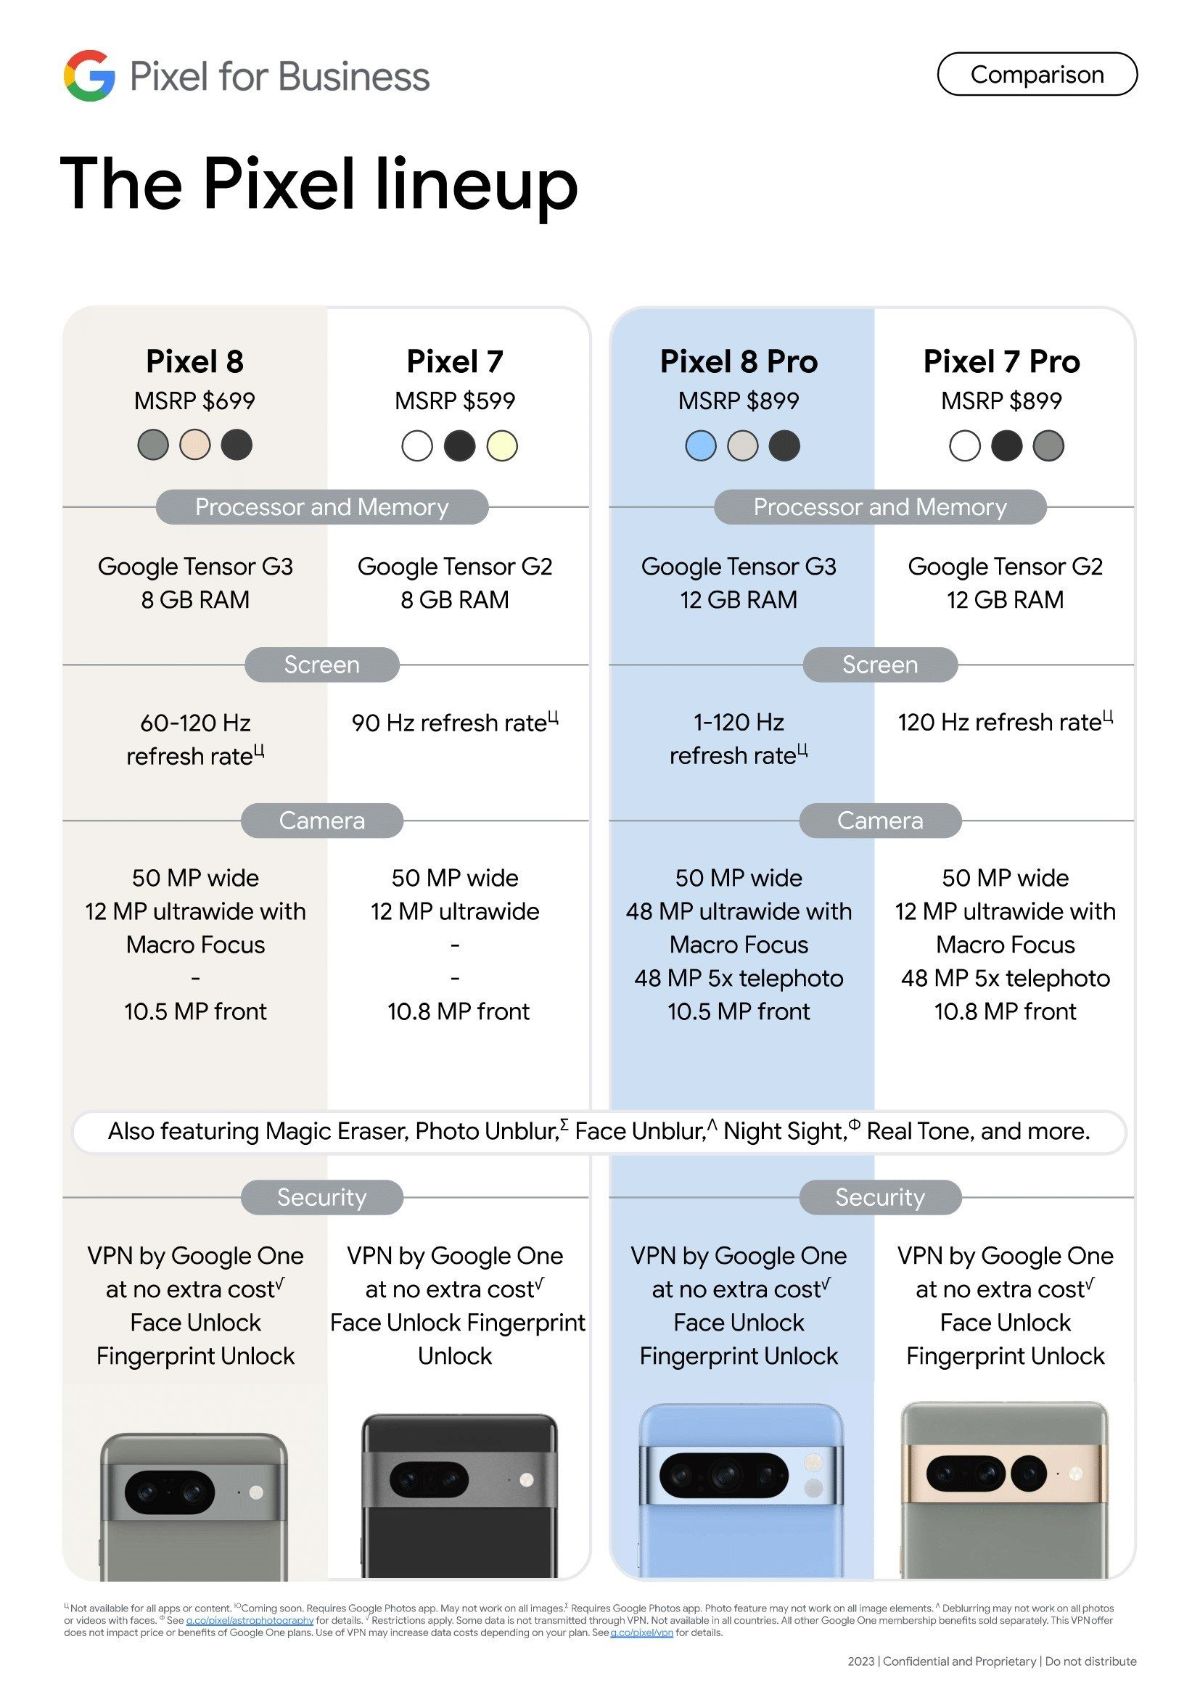 جدول مقایسه مشخصات گوشی های پیکسل